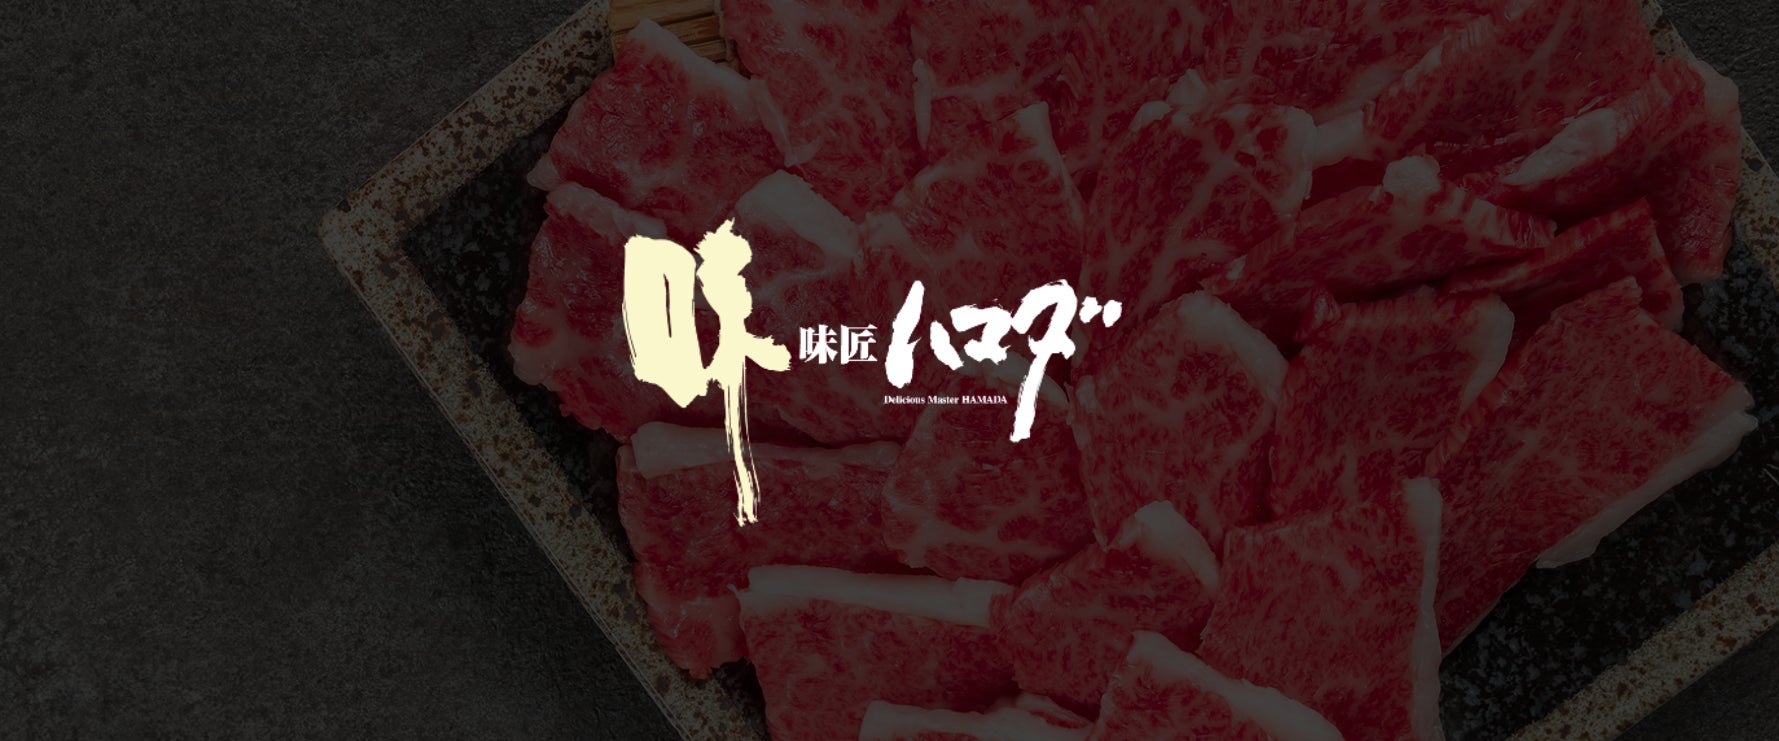 口コミで累計75万個販売した片手で食べられる「焼セイロ」
Makuake限定で鰻の量を2倍にして期間限定販売！